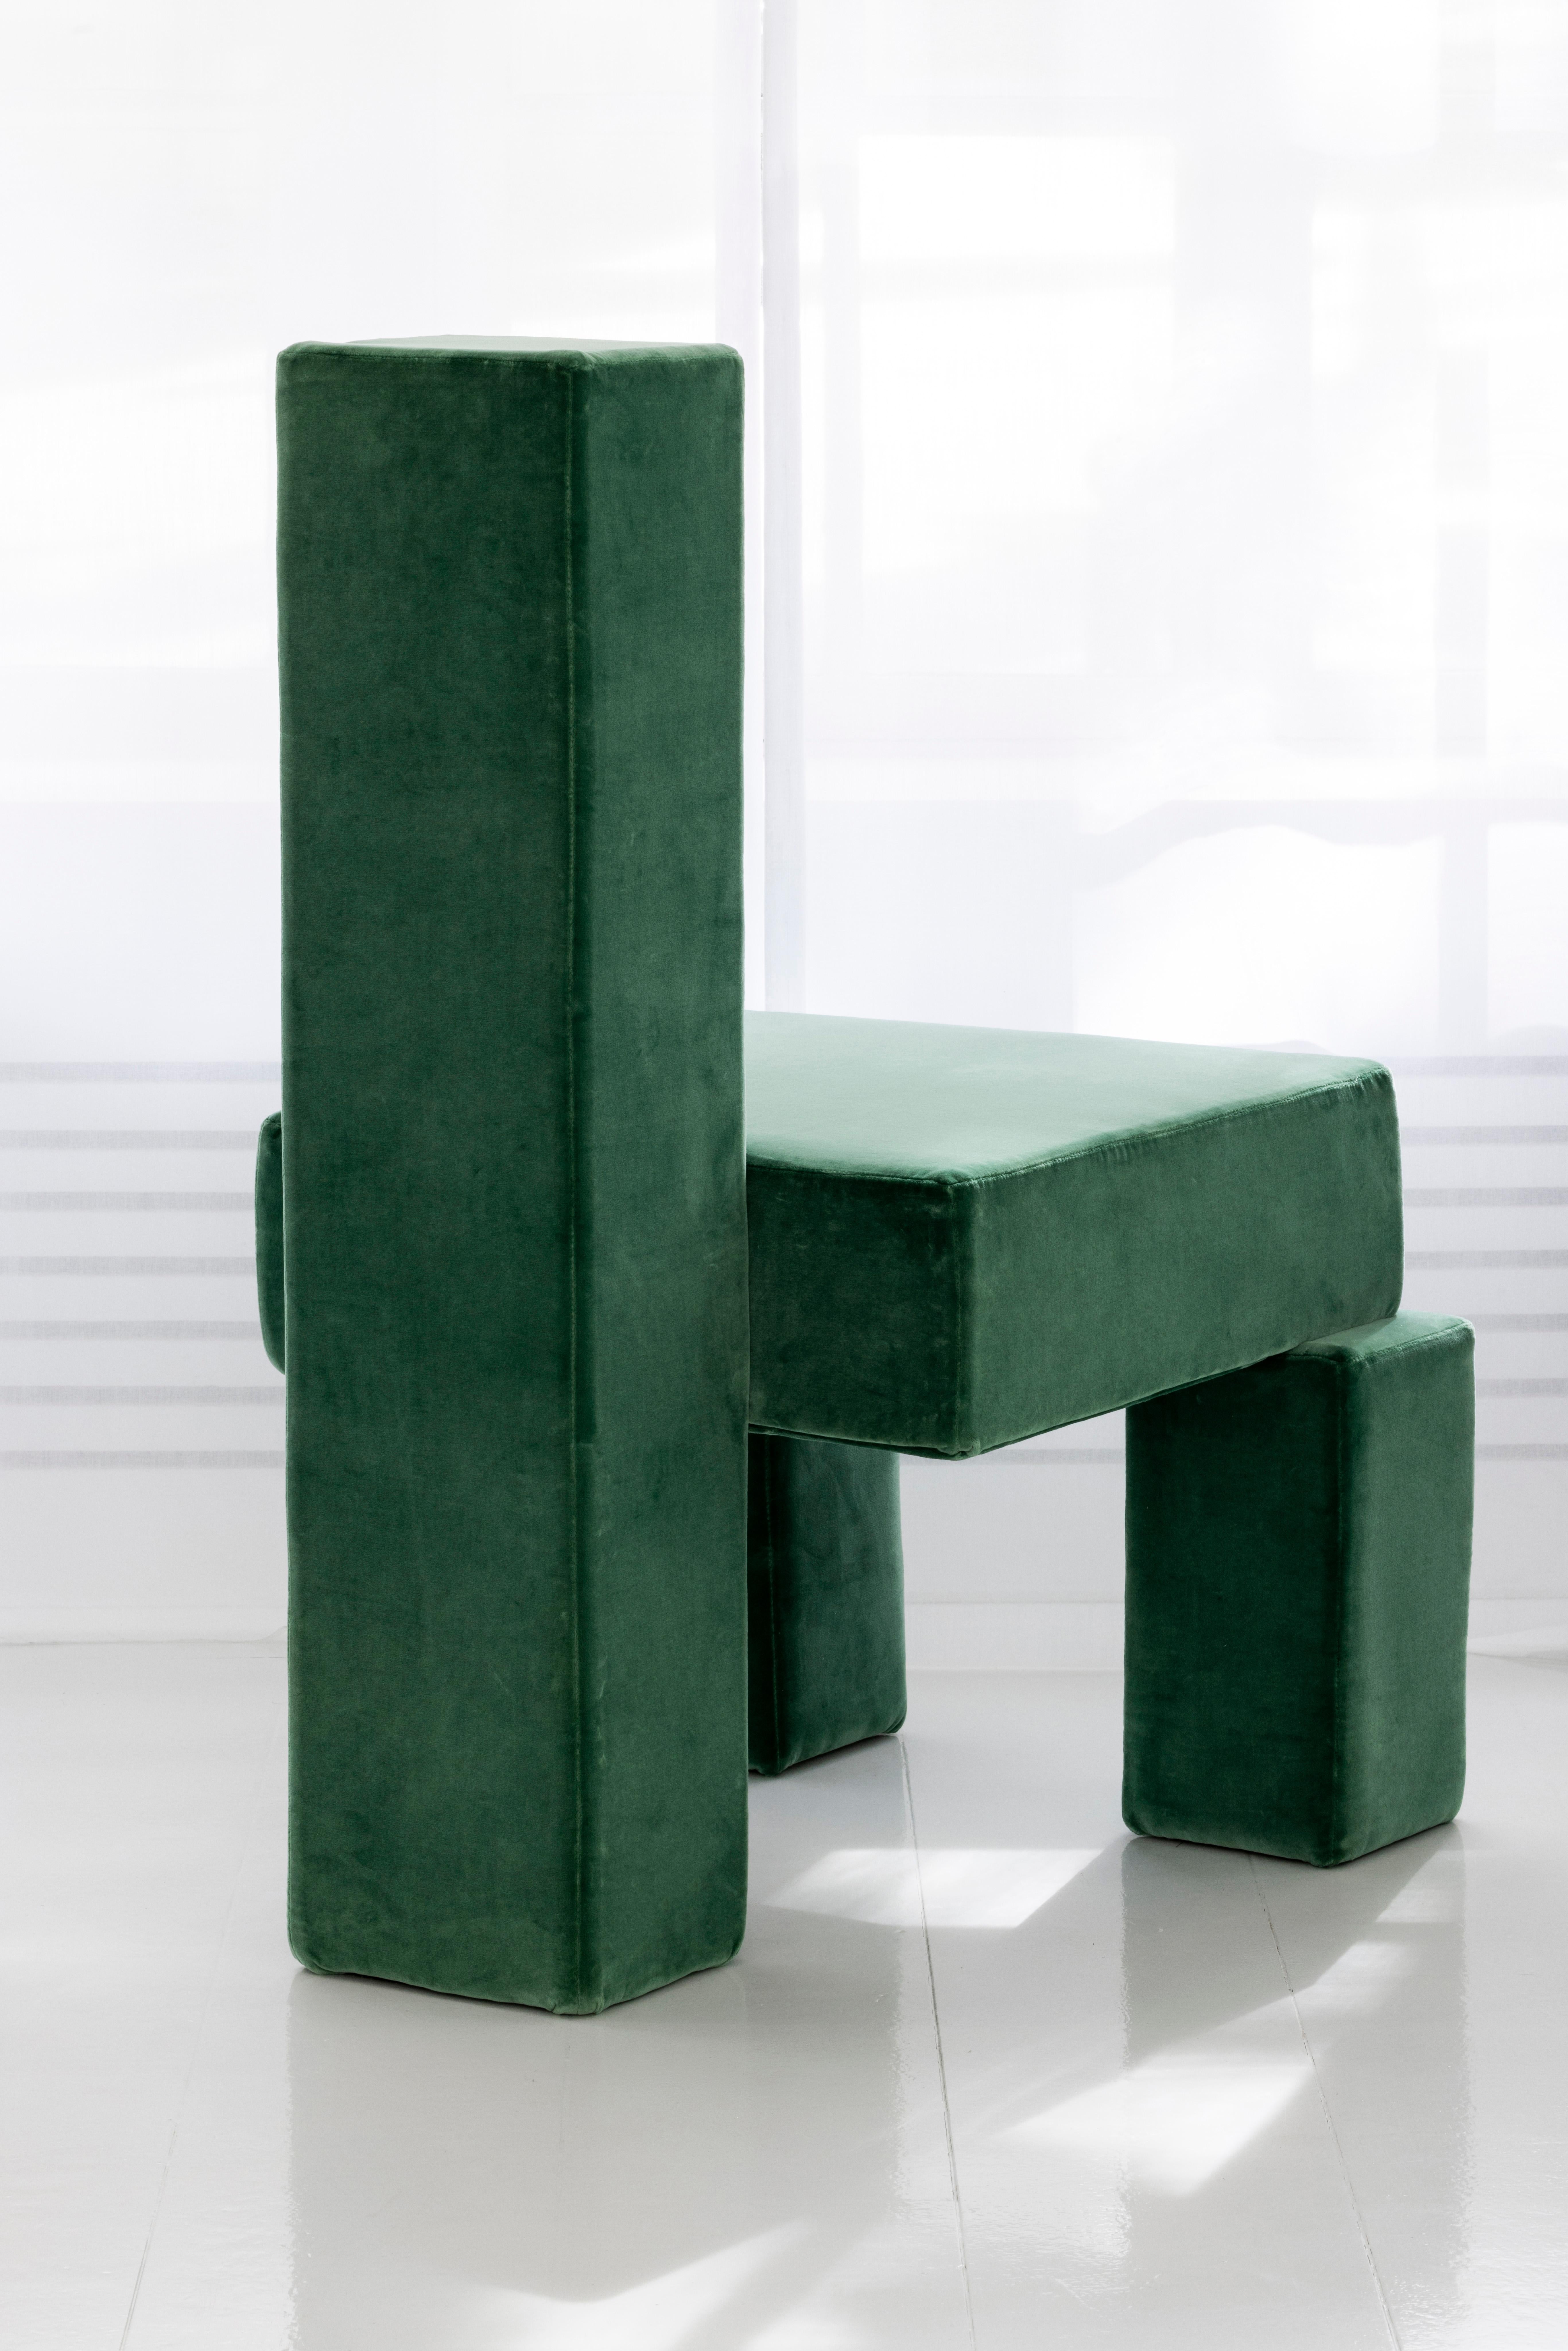 Licitra-Stuhl von Pietro Franceschini
Abmessungen: B 62 x T 71 x H 95 cm
MATERIALIEN: Samt (von Métaphores).

Jemand hat einmal gesagt, dass Einfachheit die Essenz des Glücks ist. Deshalb habe ich dieses Werk meiner Freundin Caterina Licitra